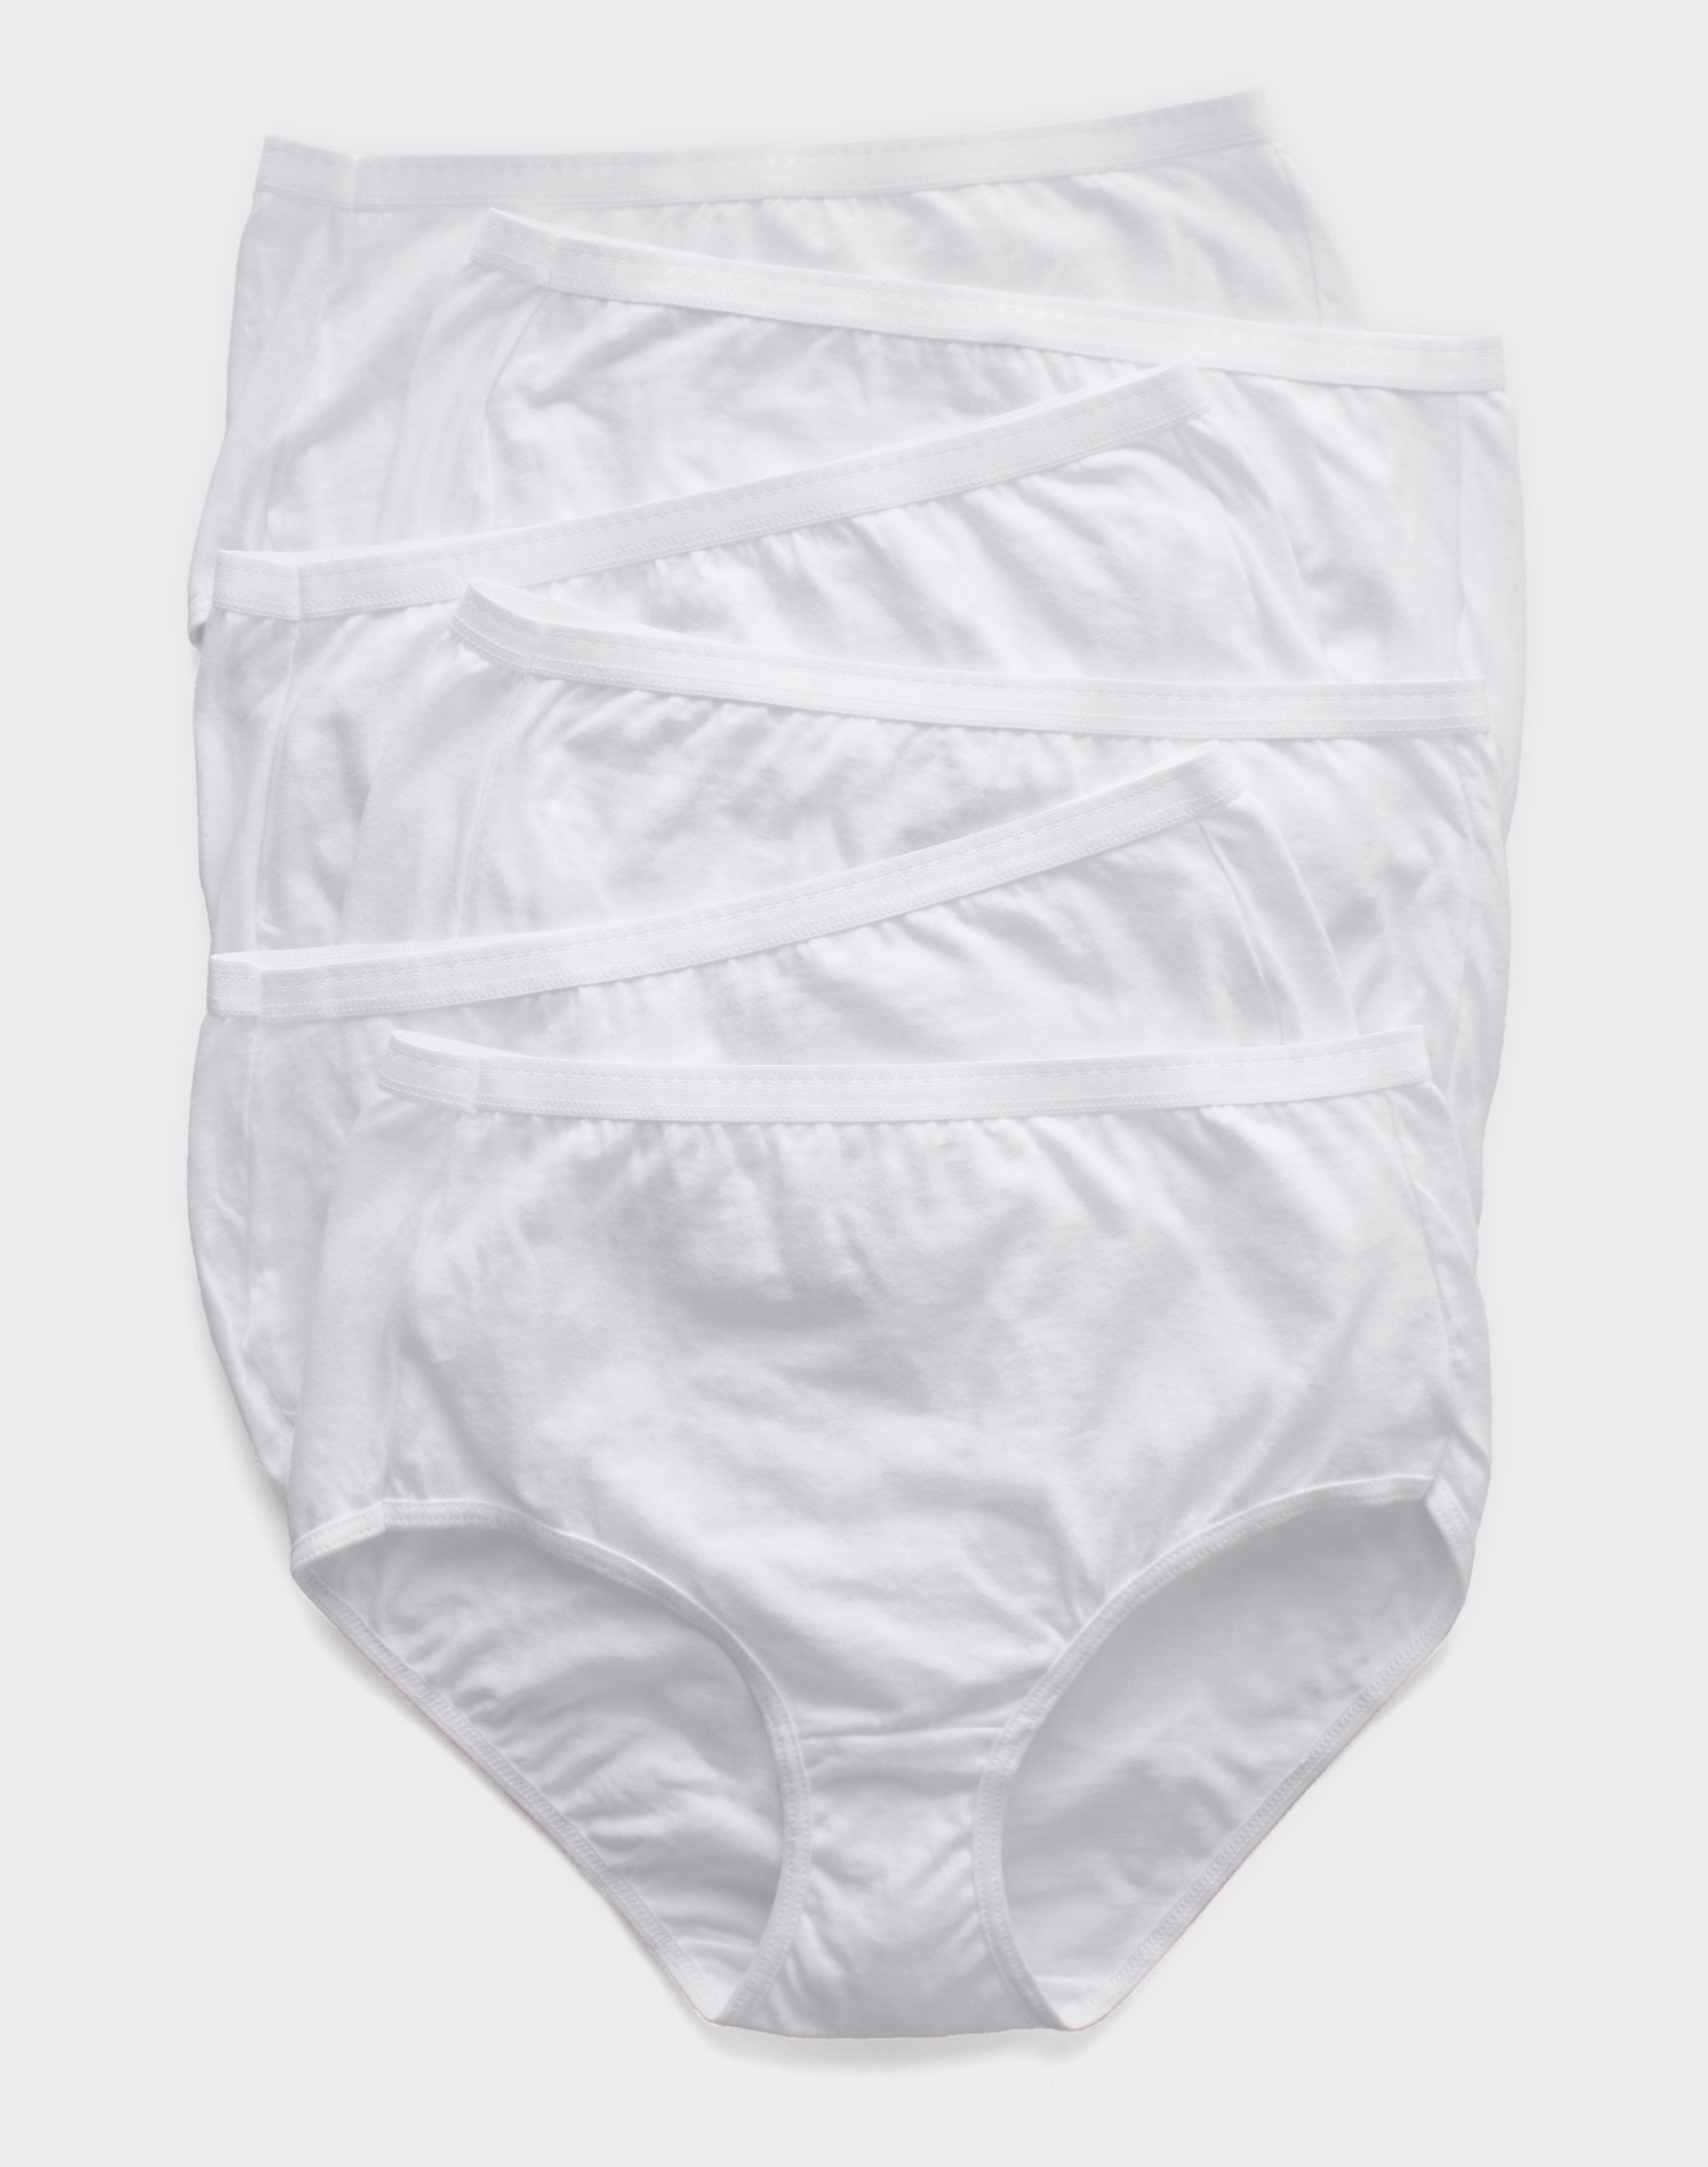 Hanes Ultimate Women's Breathable Brief Underwear, 6-Pack  White/White/White/White/White/White 9